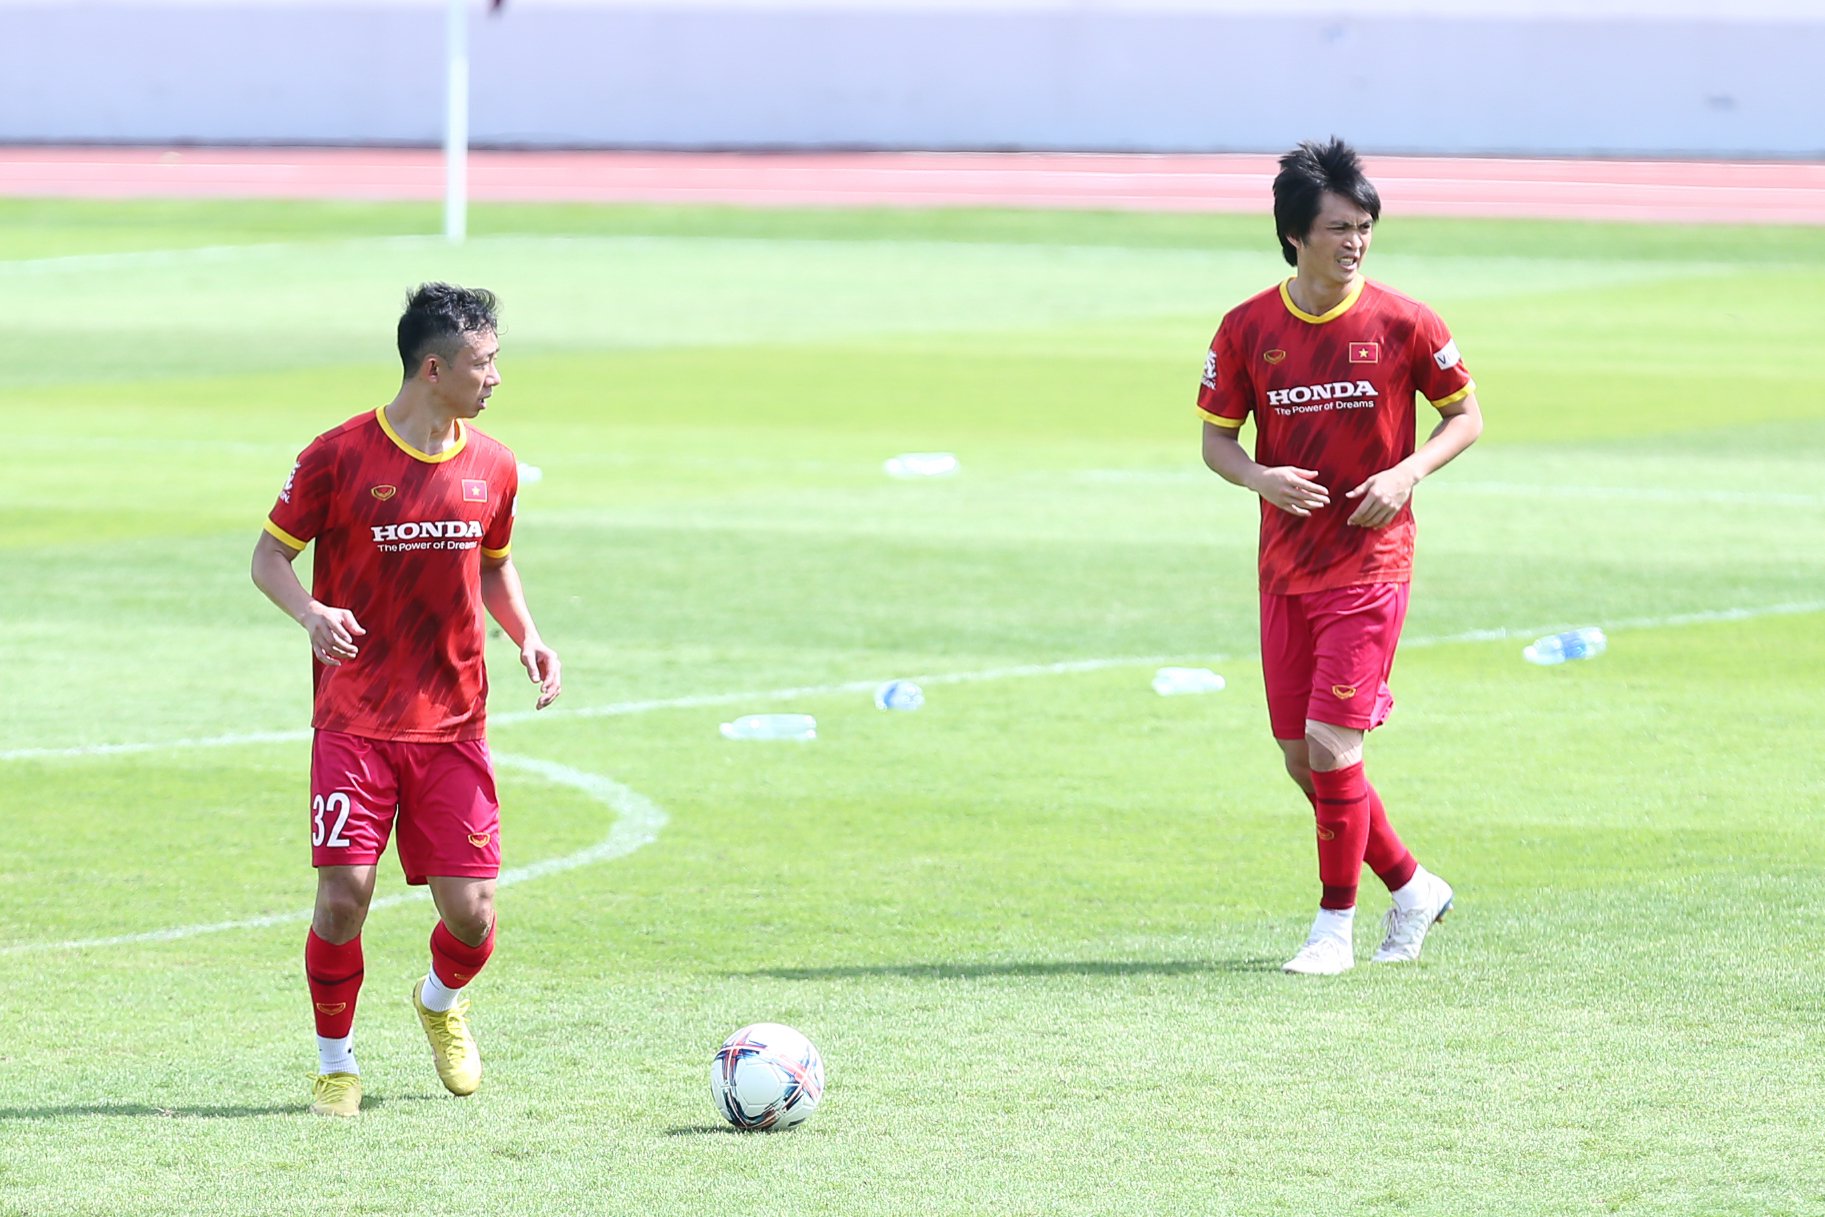 Ngày mai (10.12) sẽ là ngày cuối cùng trong chuyến tập huấn tại Bà Rịa - Vũng Tàu của đội tuyển Việt Nam. Thầy trò huấn luyện viên Park Hang-seo sẽ trở về Hà Nội để đá giao hữu với đội tuyển Philippines vào ngày 14.12.